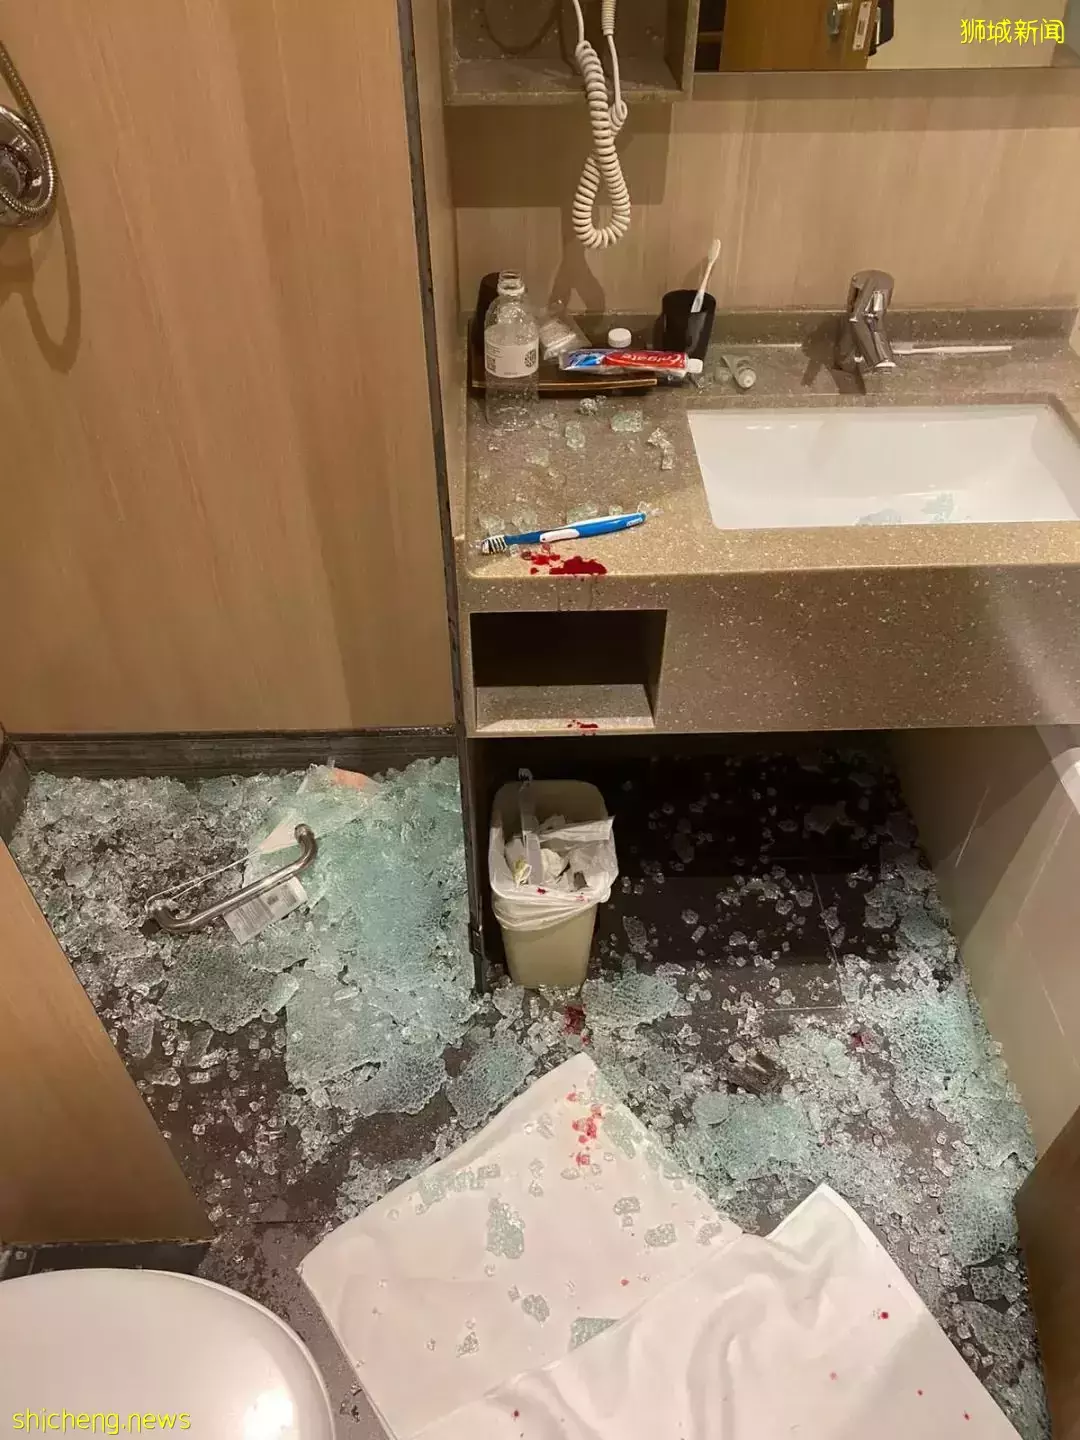 到新加坡聖淘沙度假慶生，洗澡時玻璃門爆裂濺落，41歲女子傷口長八公分